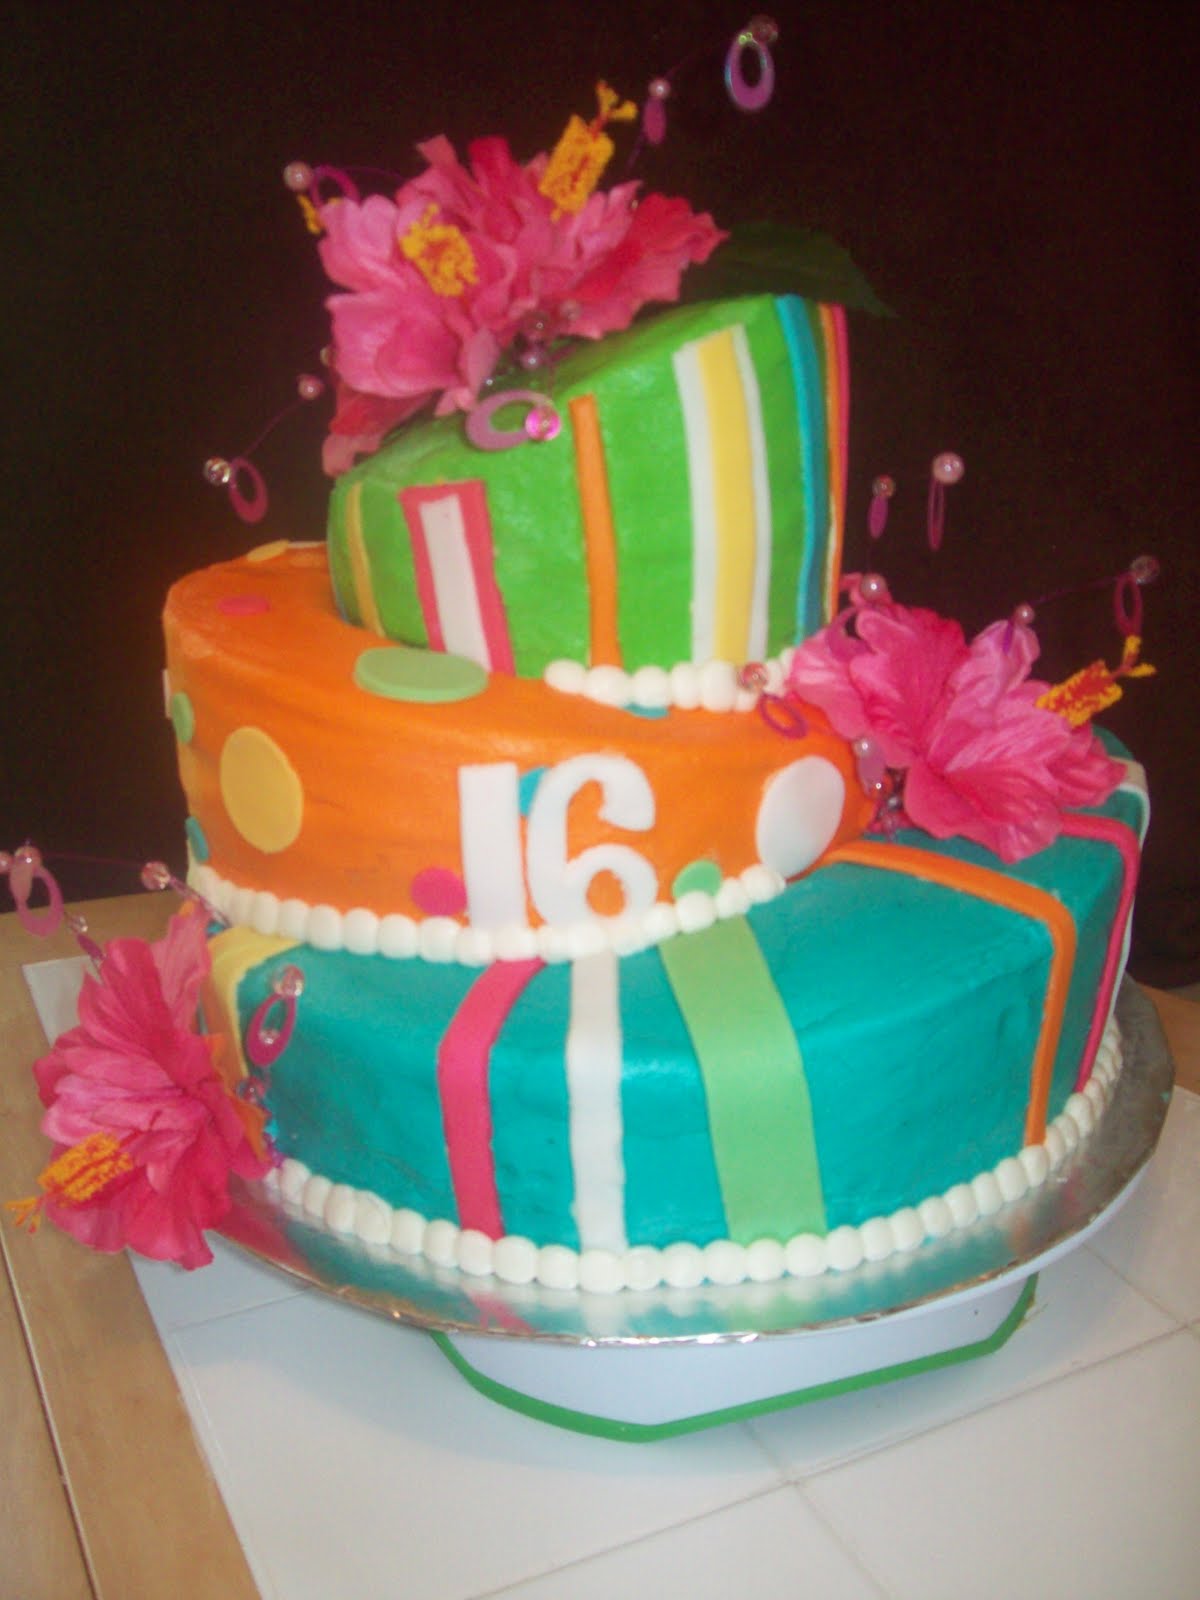 BB Cakes: Topsy-turvy 16th birthday cake